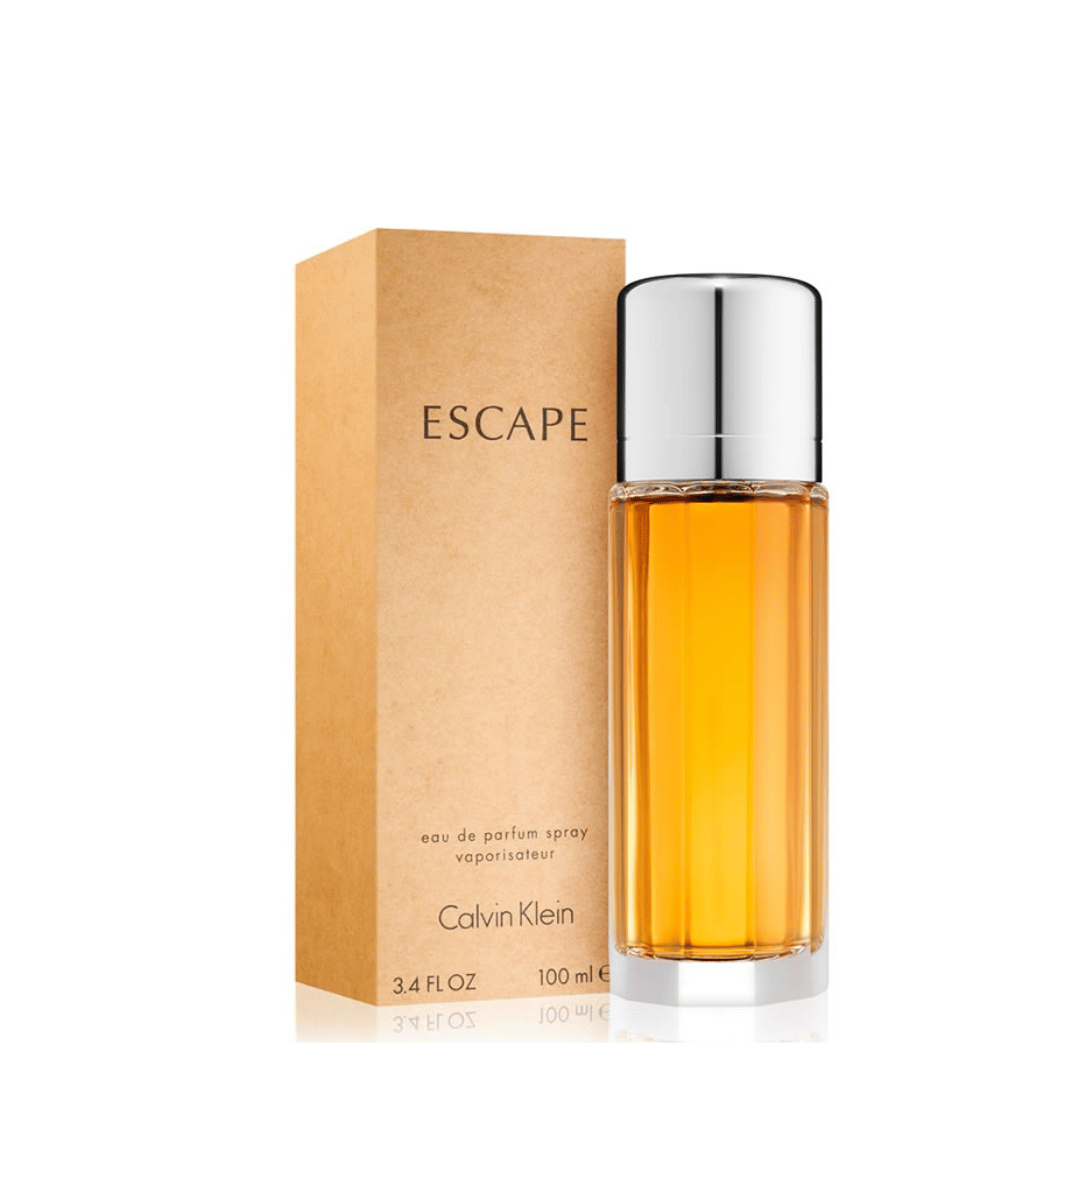 Escape by Calvin Klein Eau de Parfum